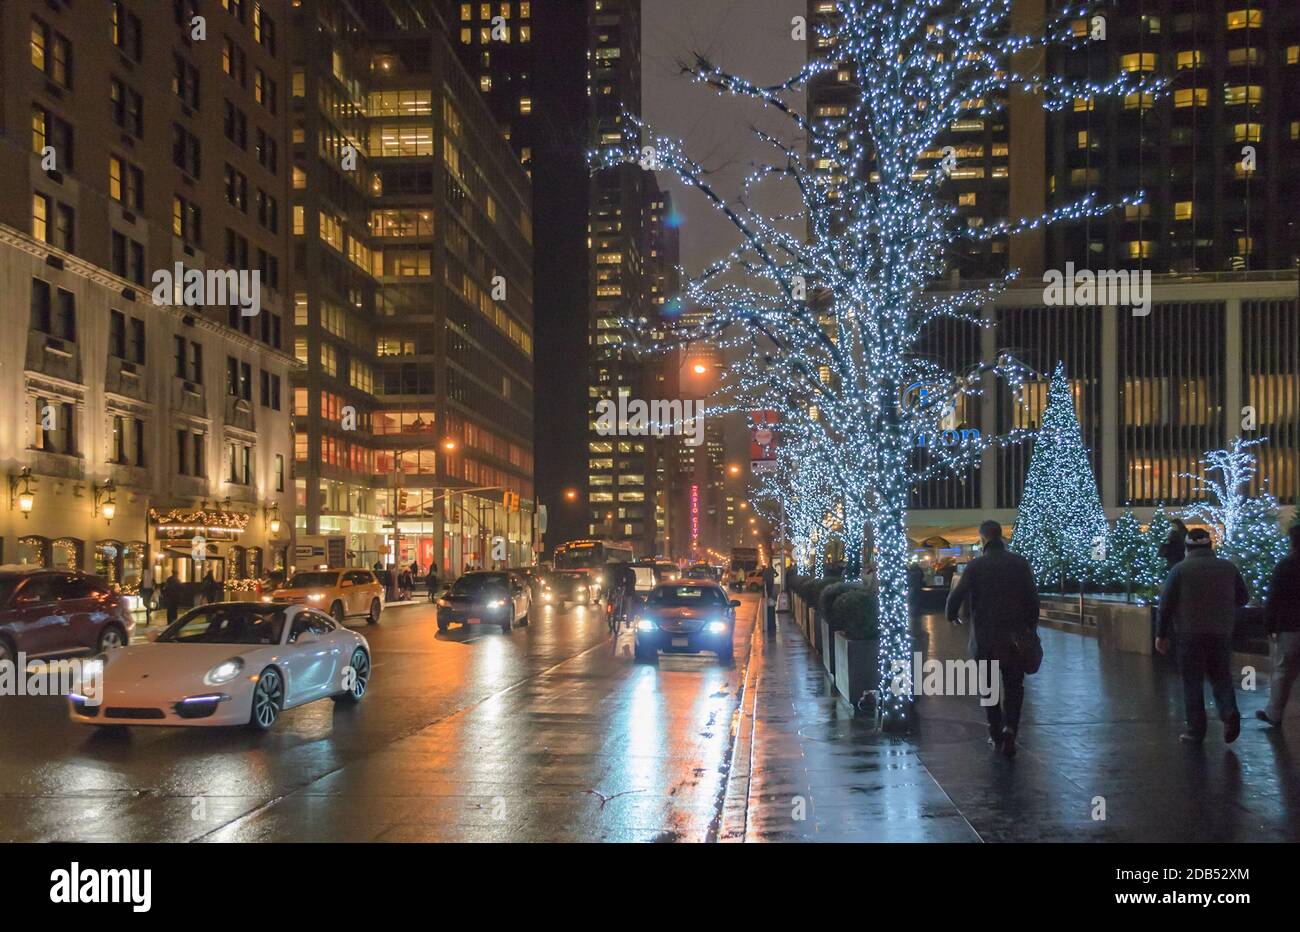 Hãy khám phá một trong những khu trung tâm sầm uất nhất của thành phố New York qua bức ảnh nền Manhattan Midtown District tràn ngập ánh đèn đêm sẽ khiến bạn thấy mê hoặc và muốn đắm mình trong không khí ấm áp của thành phố về đêm.